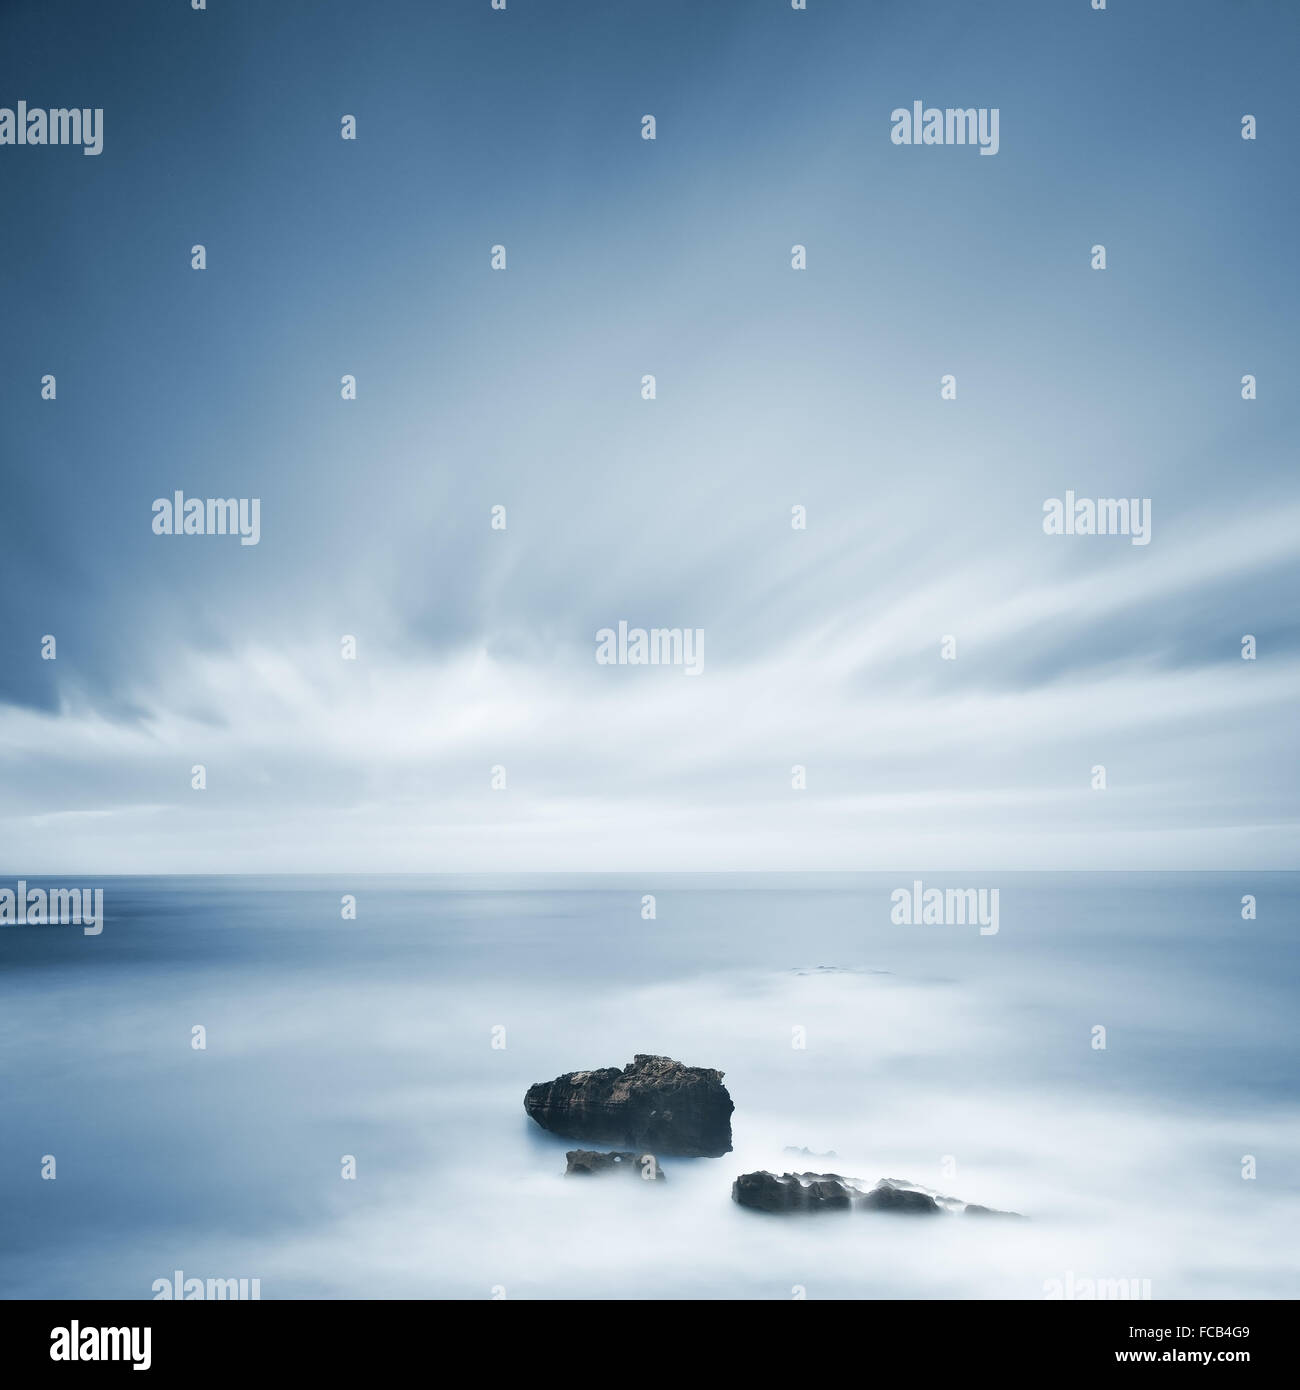 Dunklen Felsen in einem blauen Ozean unter bewölktem Himmel bei schlechtem Wetter. Langzeitbelichtung Fotografie Stockfoto